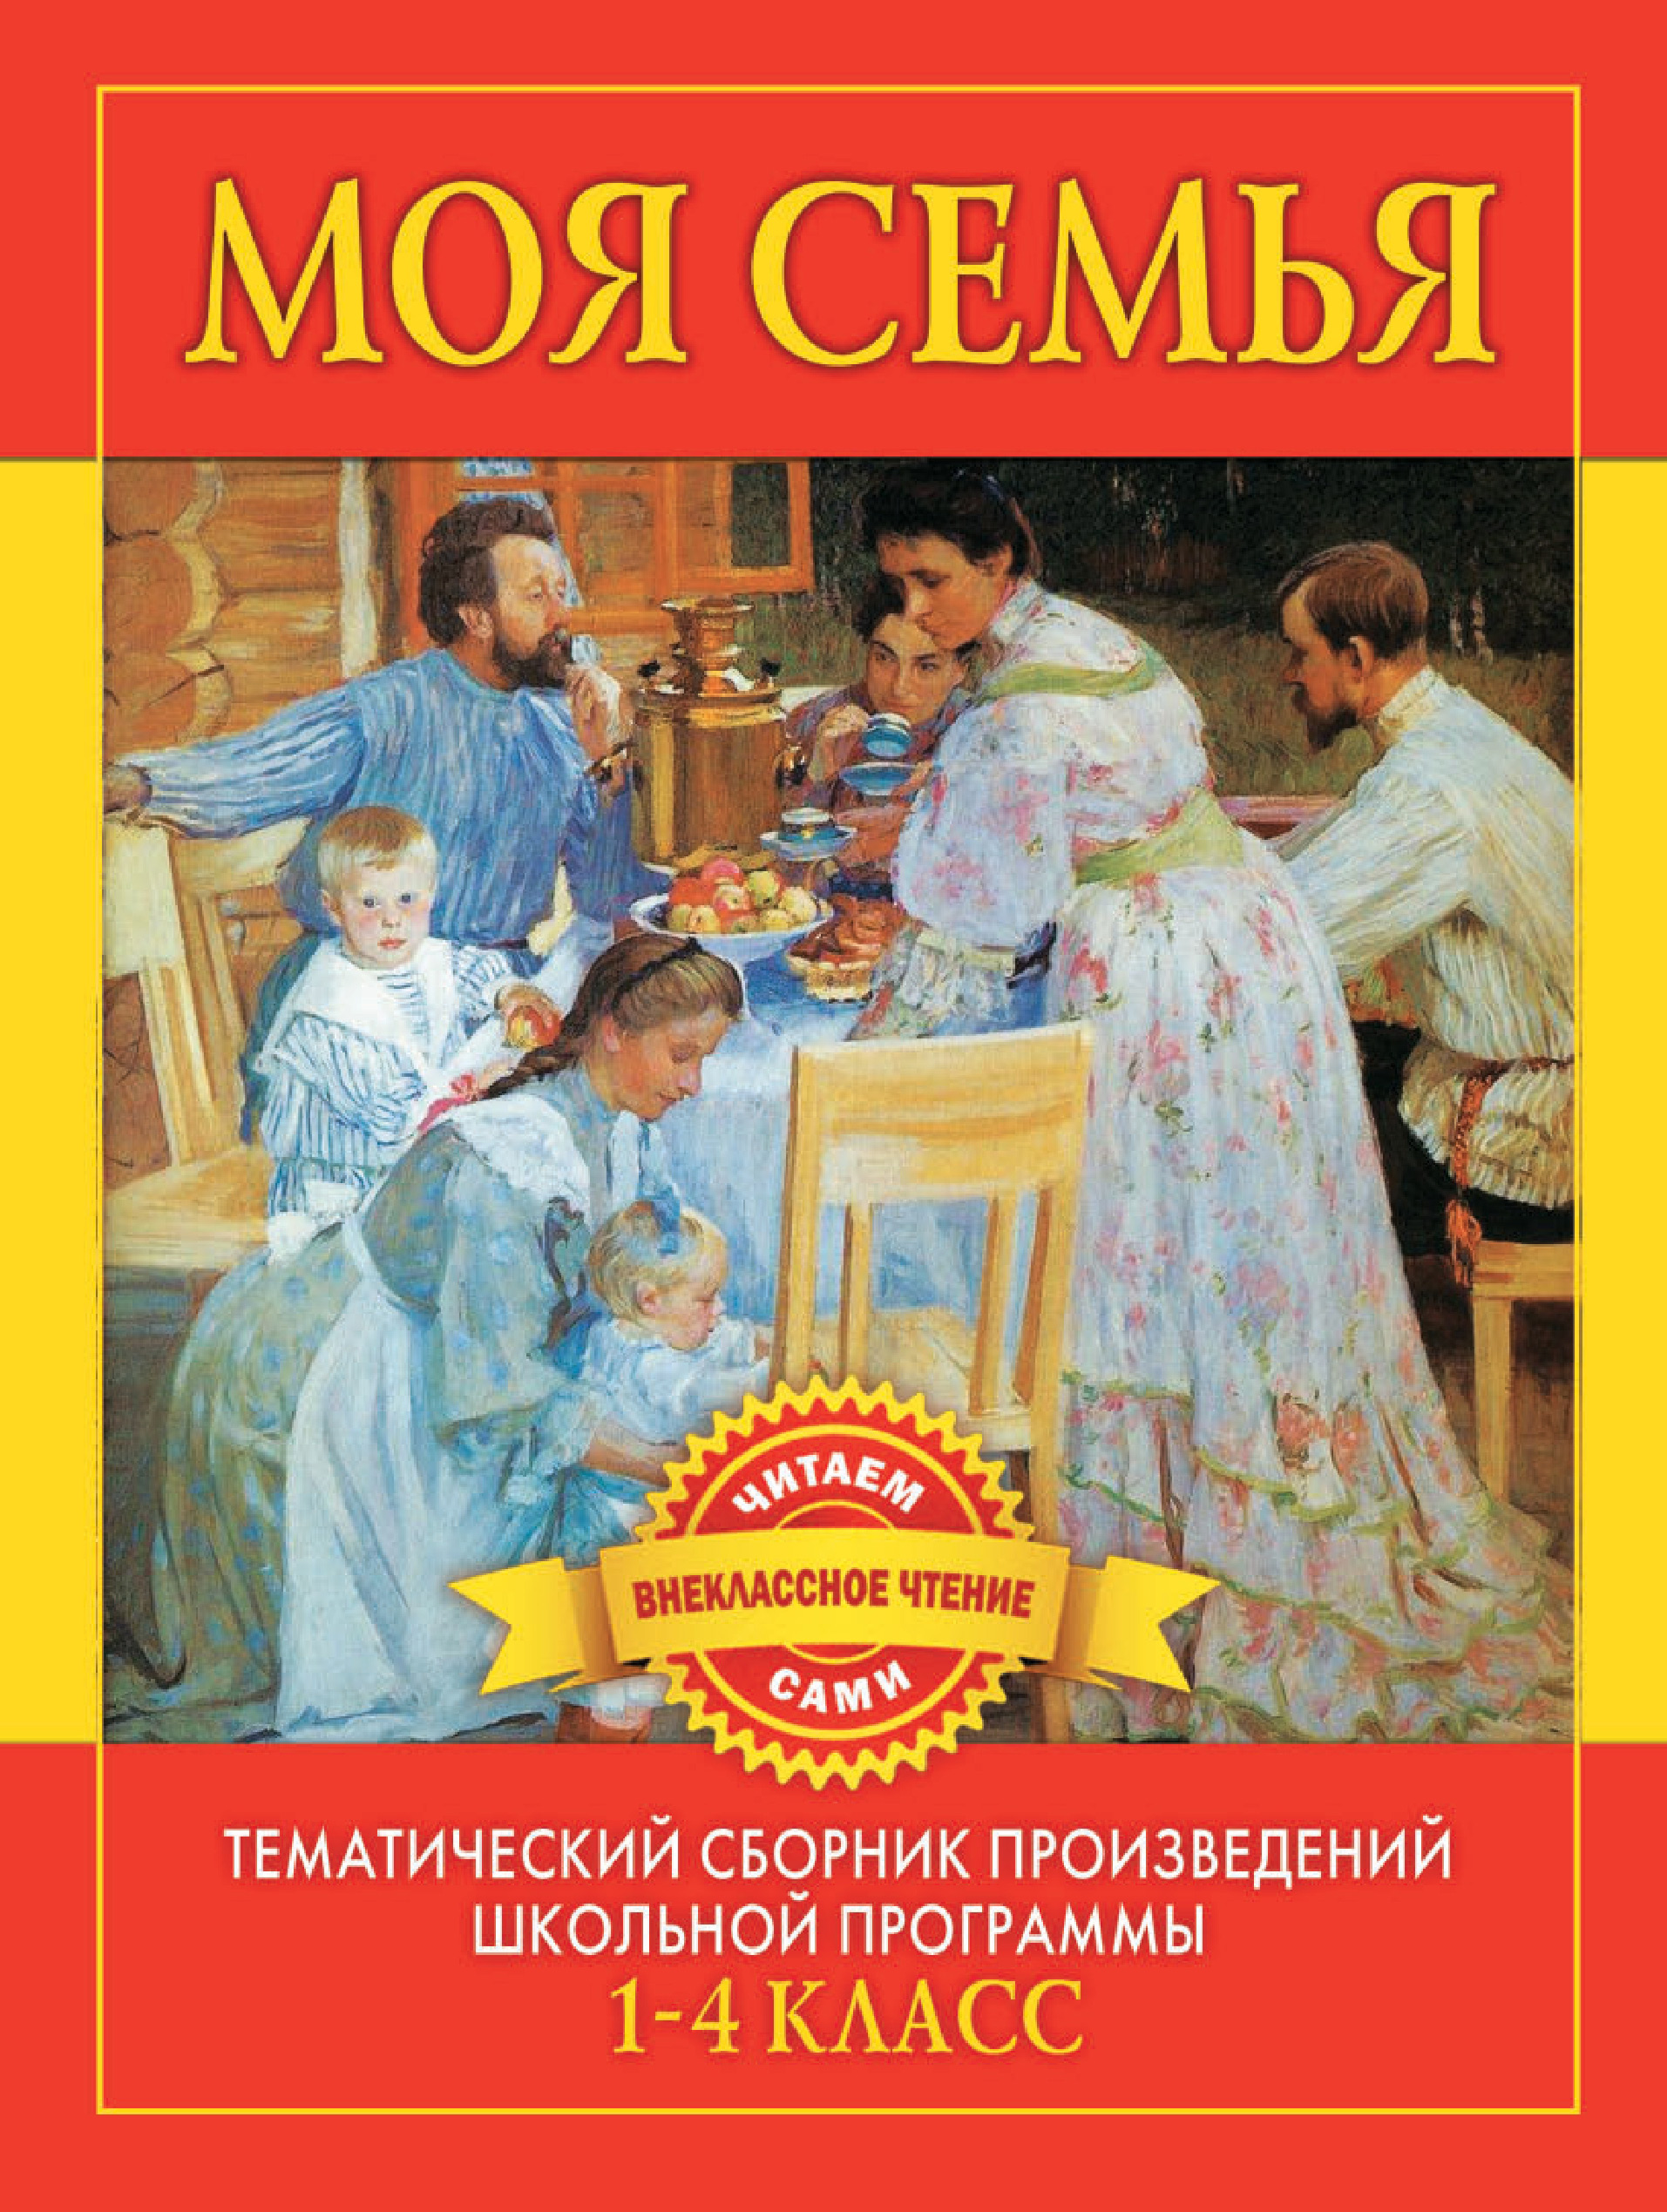 Русские произведения 7 класс. Художественные книги о семье. Детские книги о семье. Книга моей семьи. Книги посвященные семье.